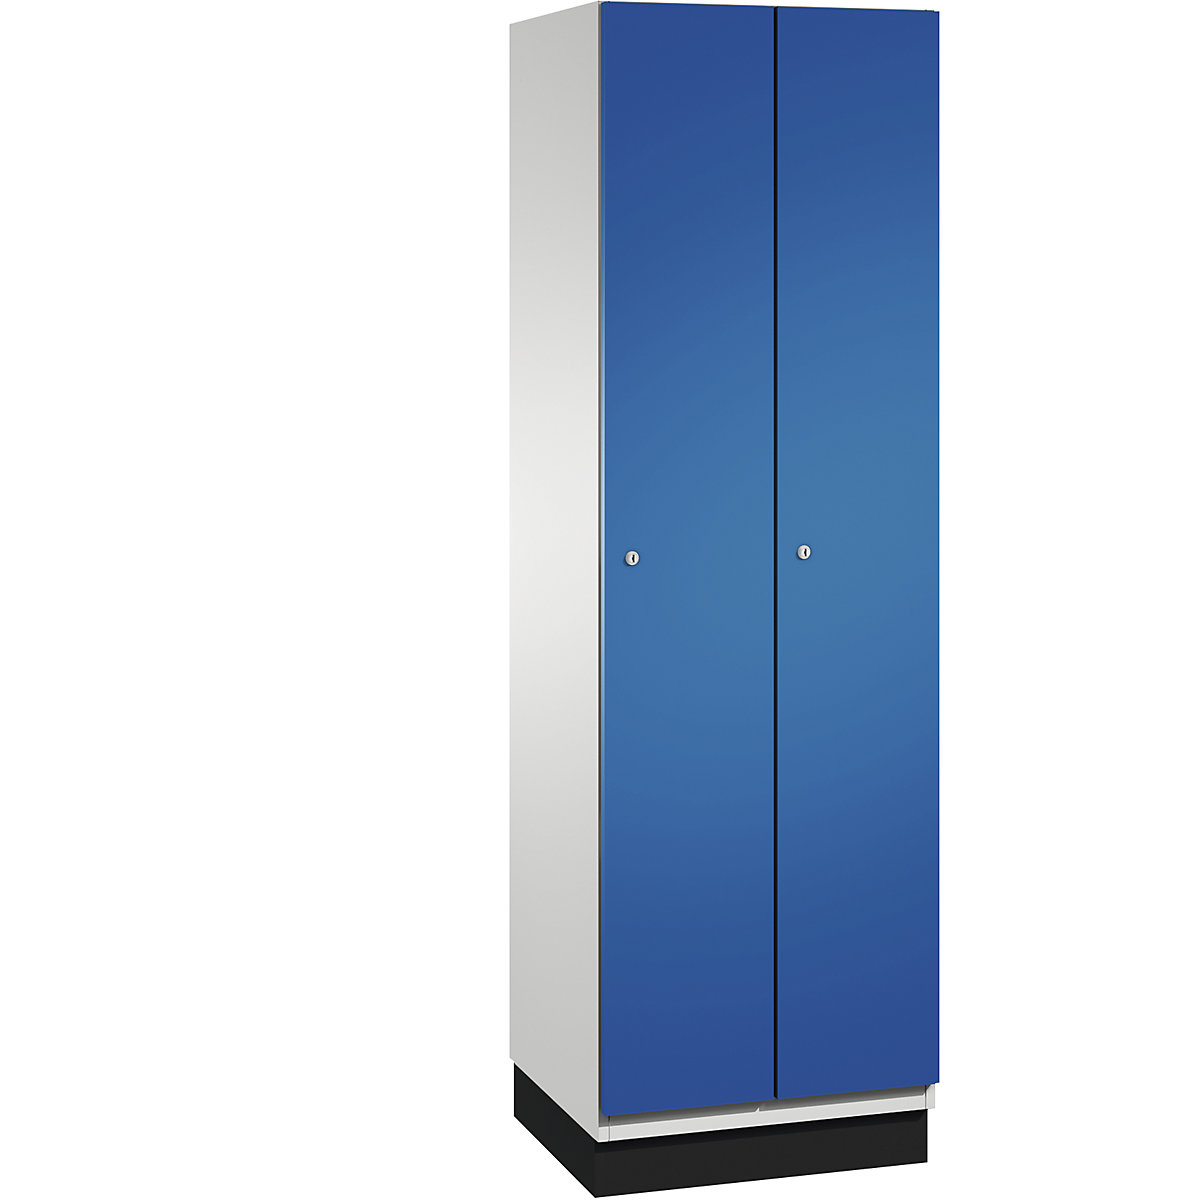 CAMBIO cloakroom locker with sheet steel doors – C+P, 2 compartments, 600 mm wide, body light grey / door gentian blue-2